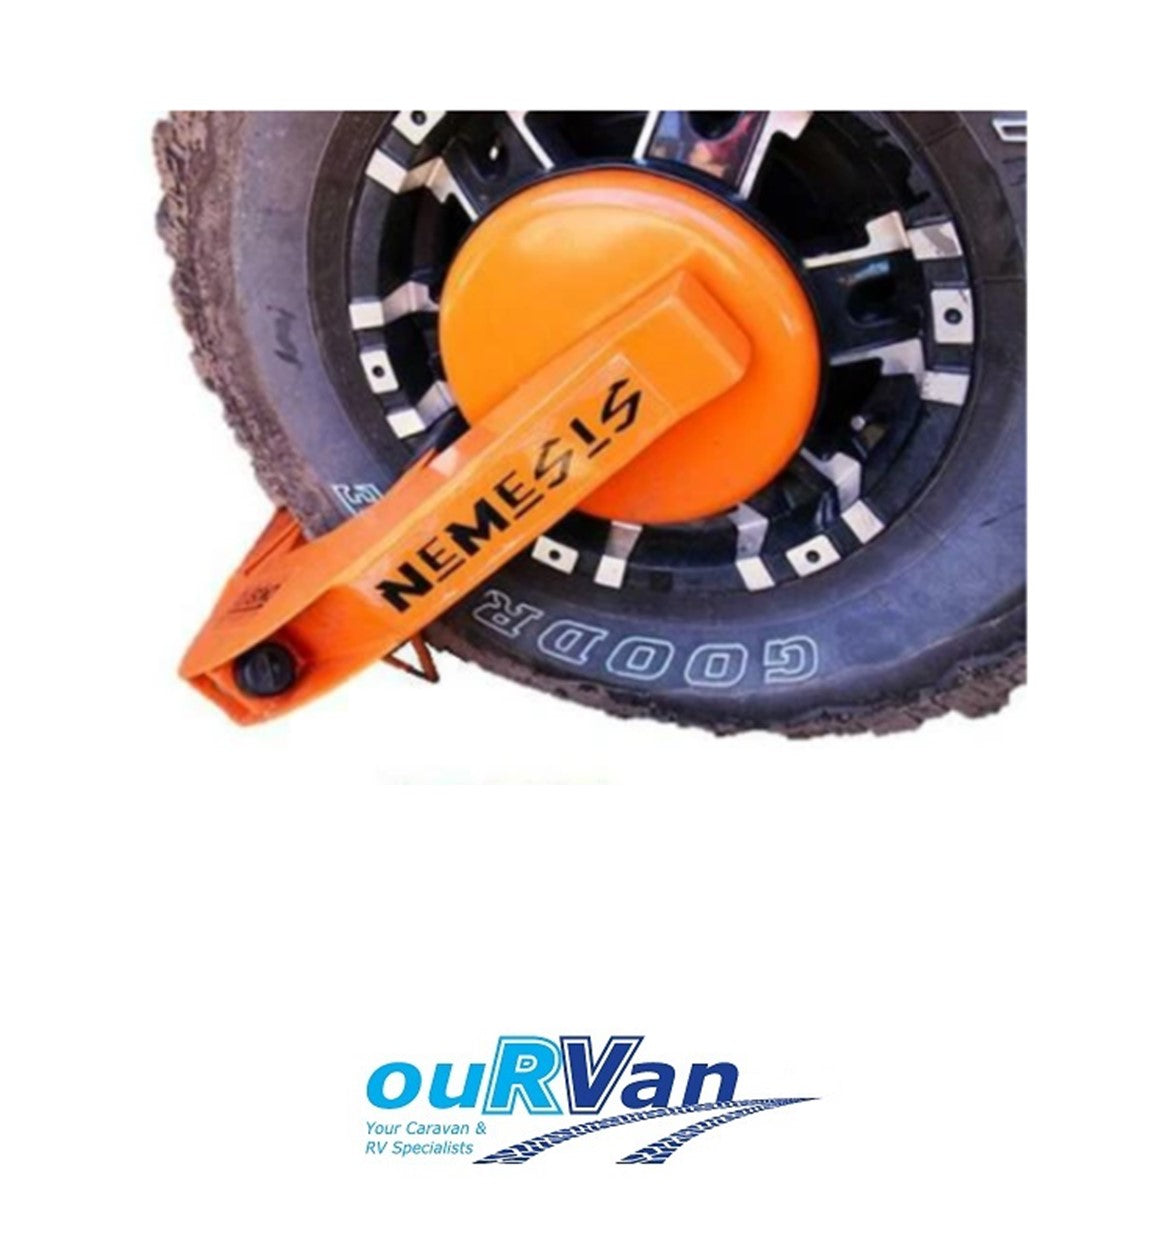 Fullstop™ Nemesis V3 Fpc300 Wheel Lock Off Road Clamp Caravan Trailer 450-06064